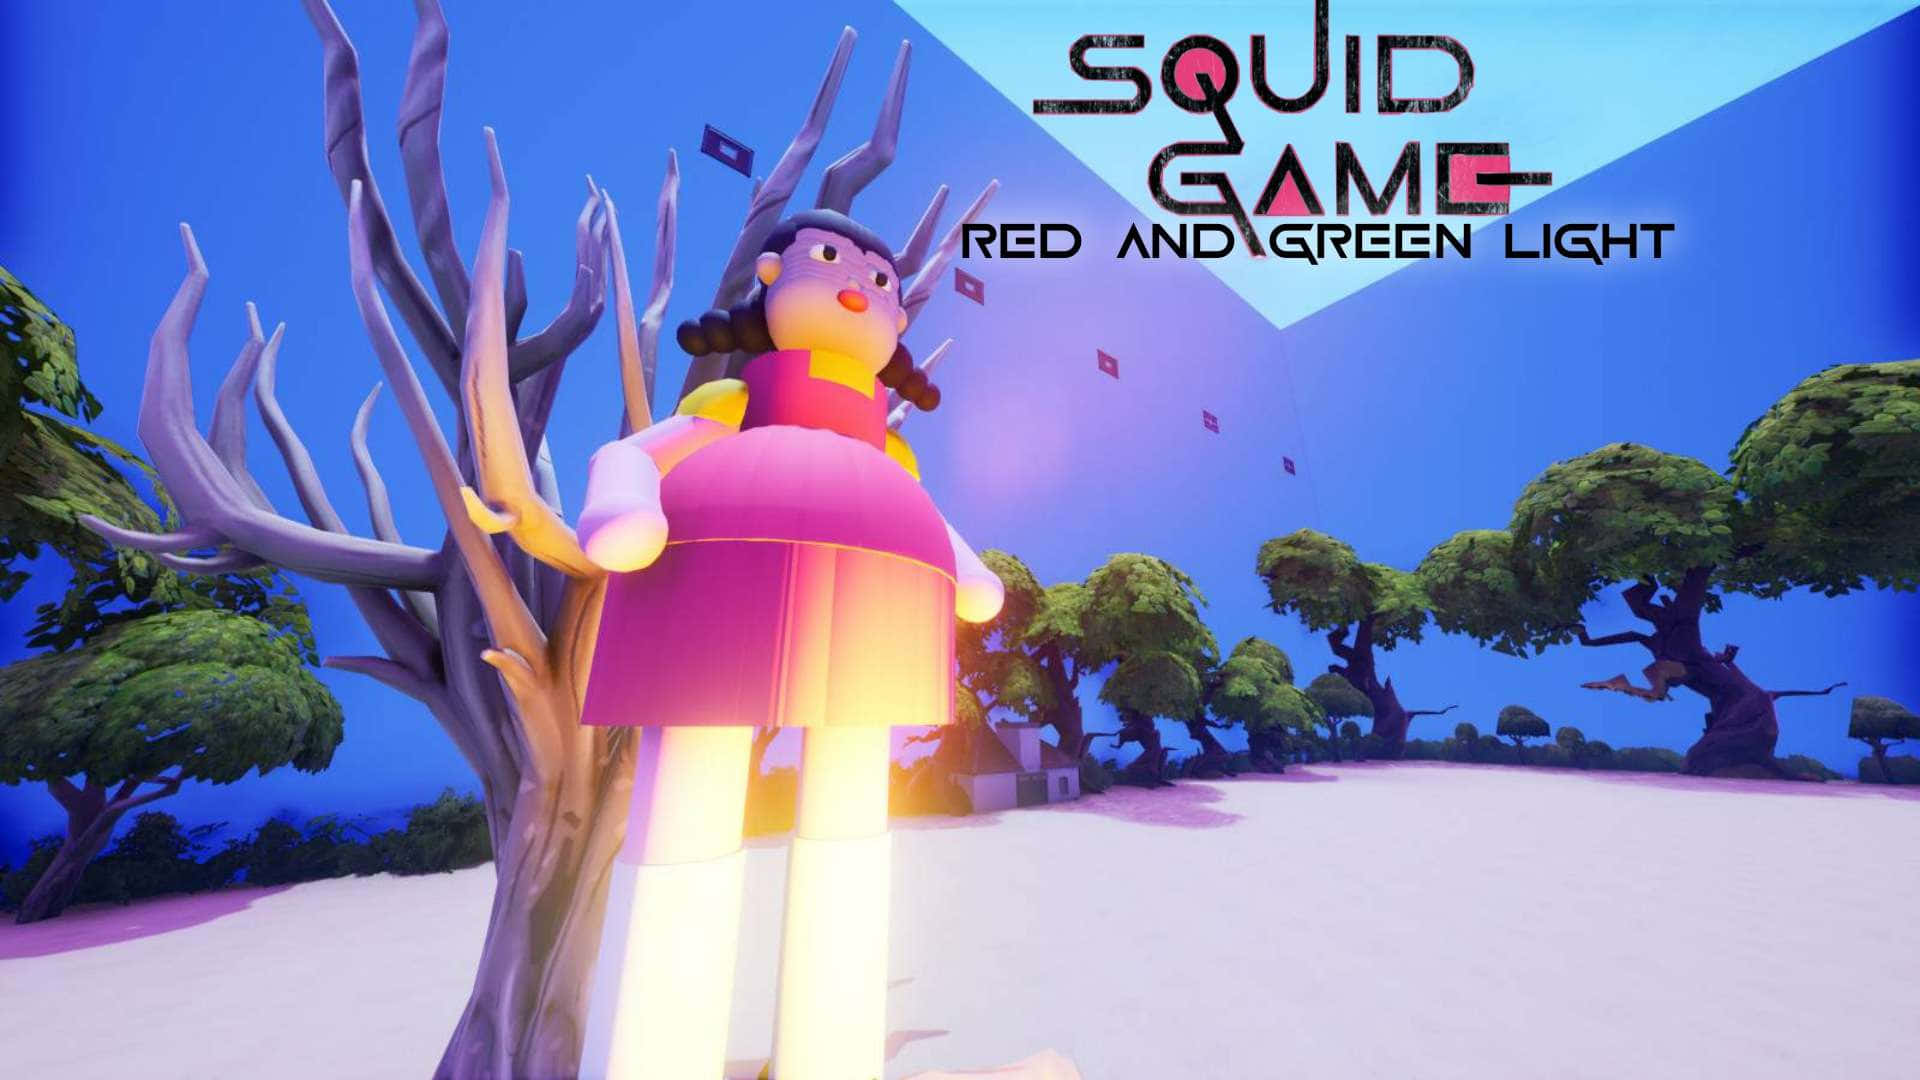 Fundode Tela Do Fortnite Creative Squid Game Red Light Green Light.